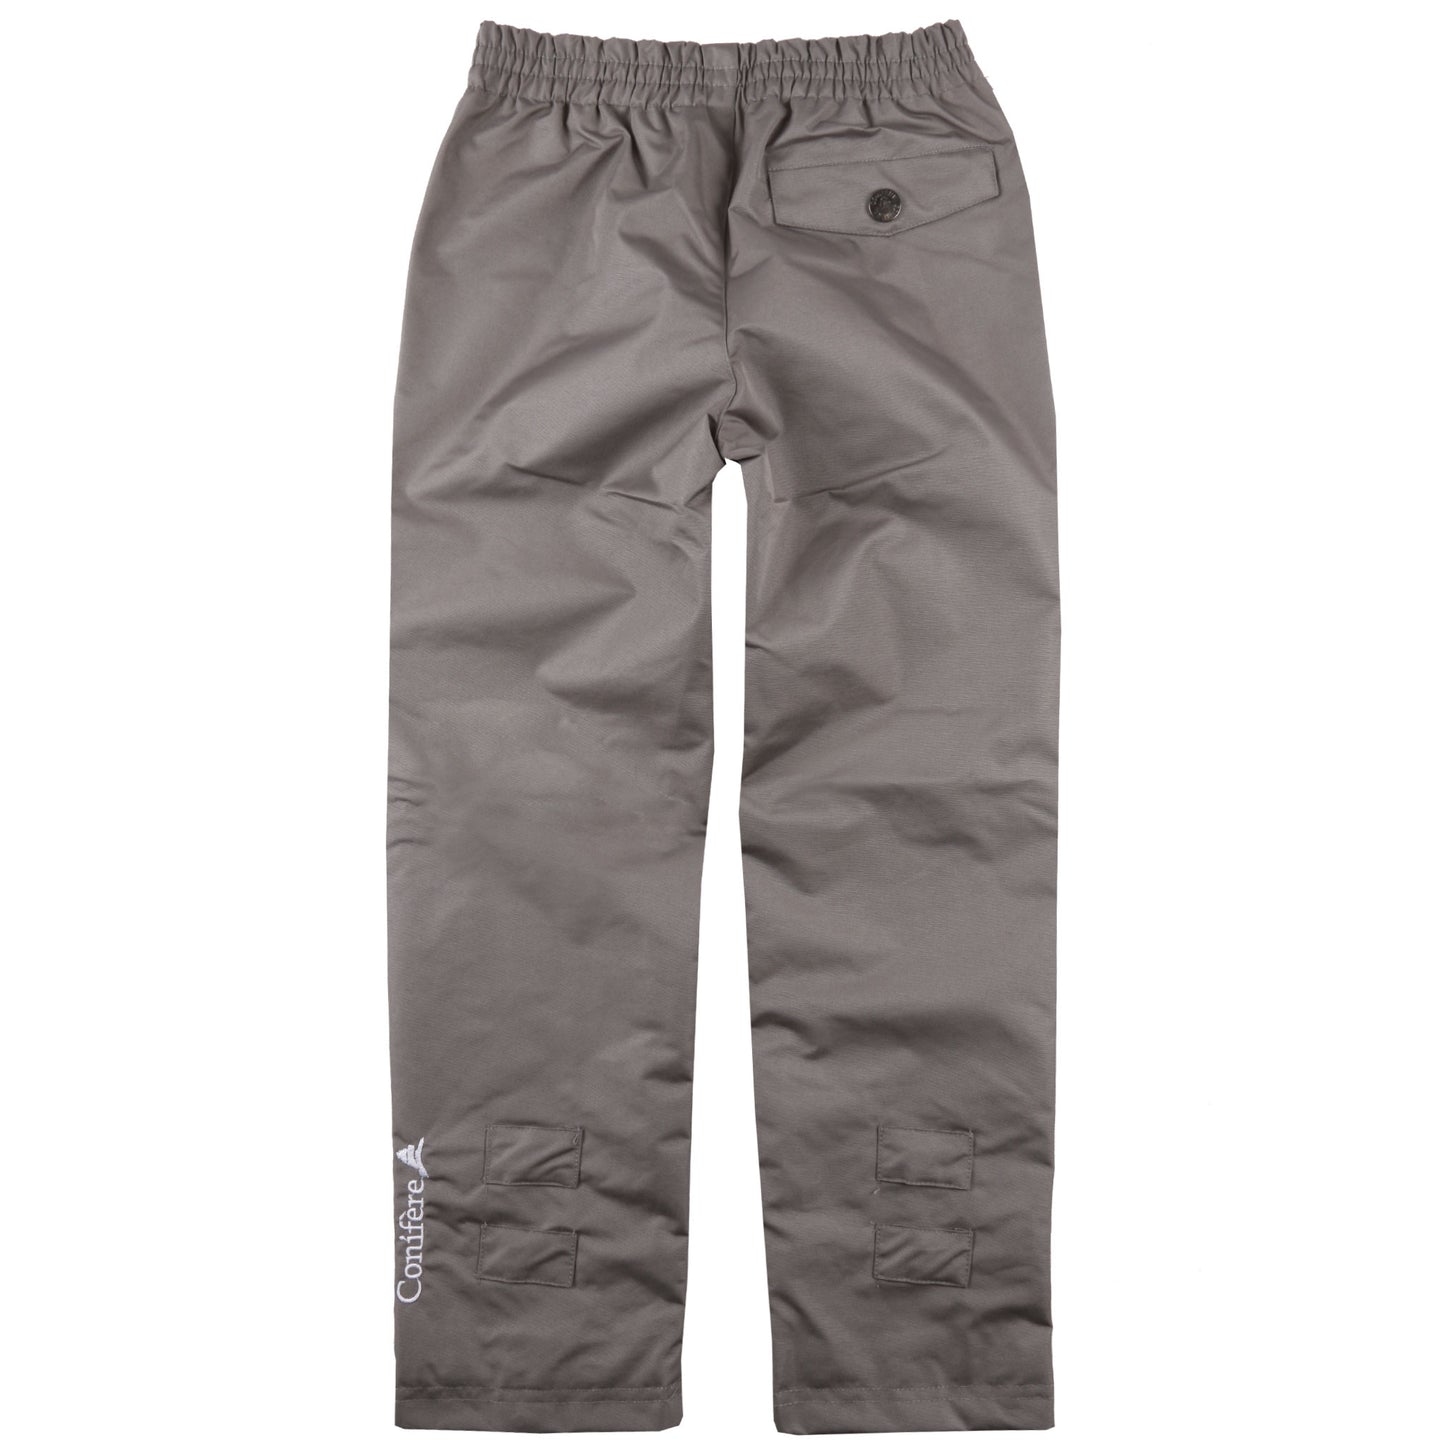 Pantalon anti-éclaboussures gris unisexe pour enfant